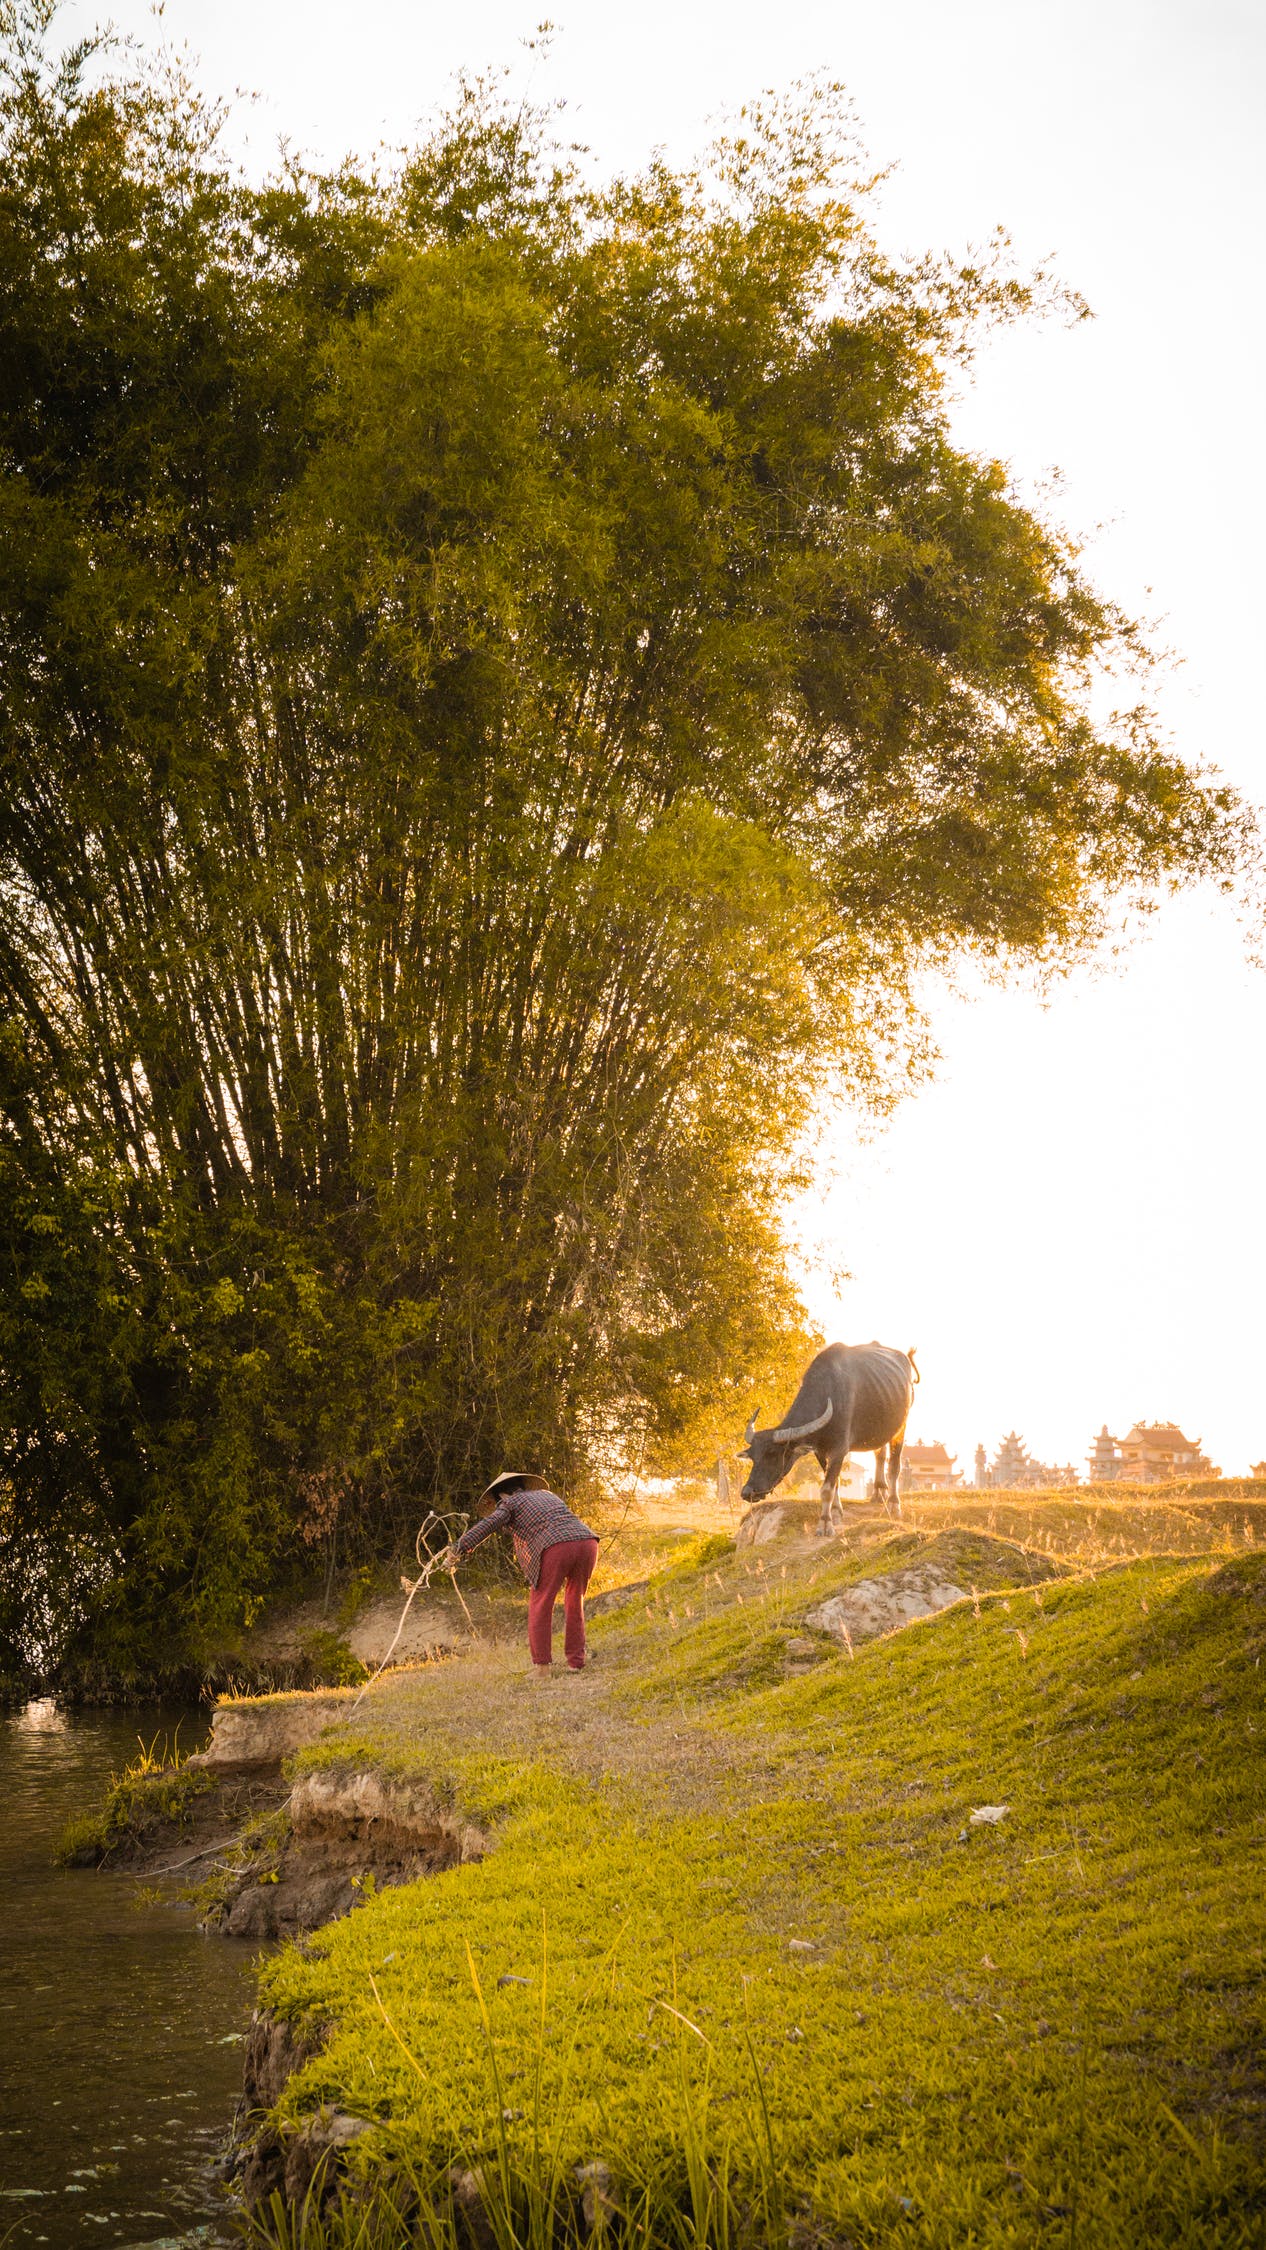 Hình Ảnh Làng Quê Việt Nam Đẹp: Làm mới tinh thần với hình ảnh làng quê Việt Nam đẹp say đắm. Trong những bức hình này, sự tương tác giữa con người và thiên nhiên như muôn thuở được tái hiện một cách đầy màu sắc và sống động.